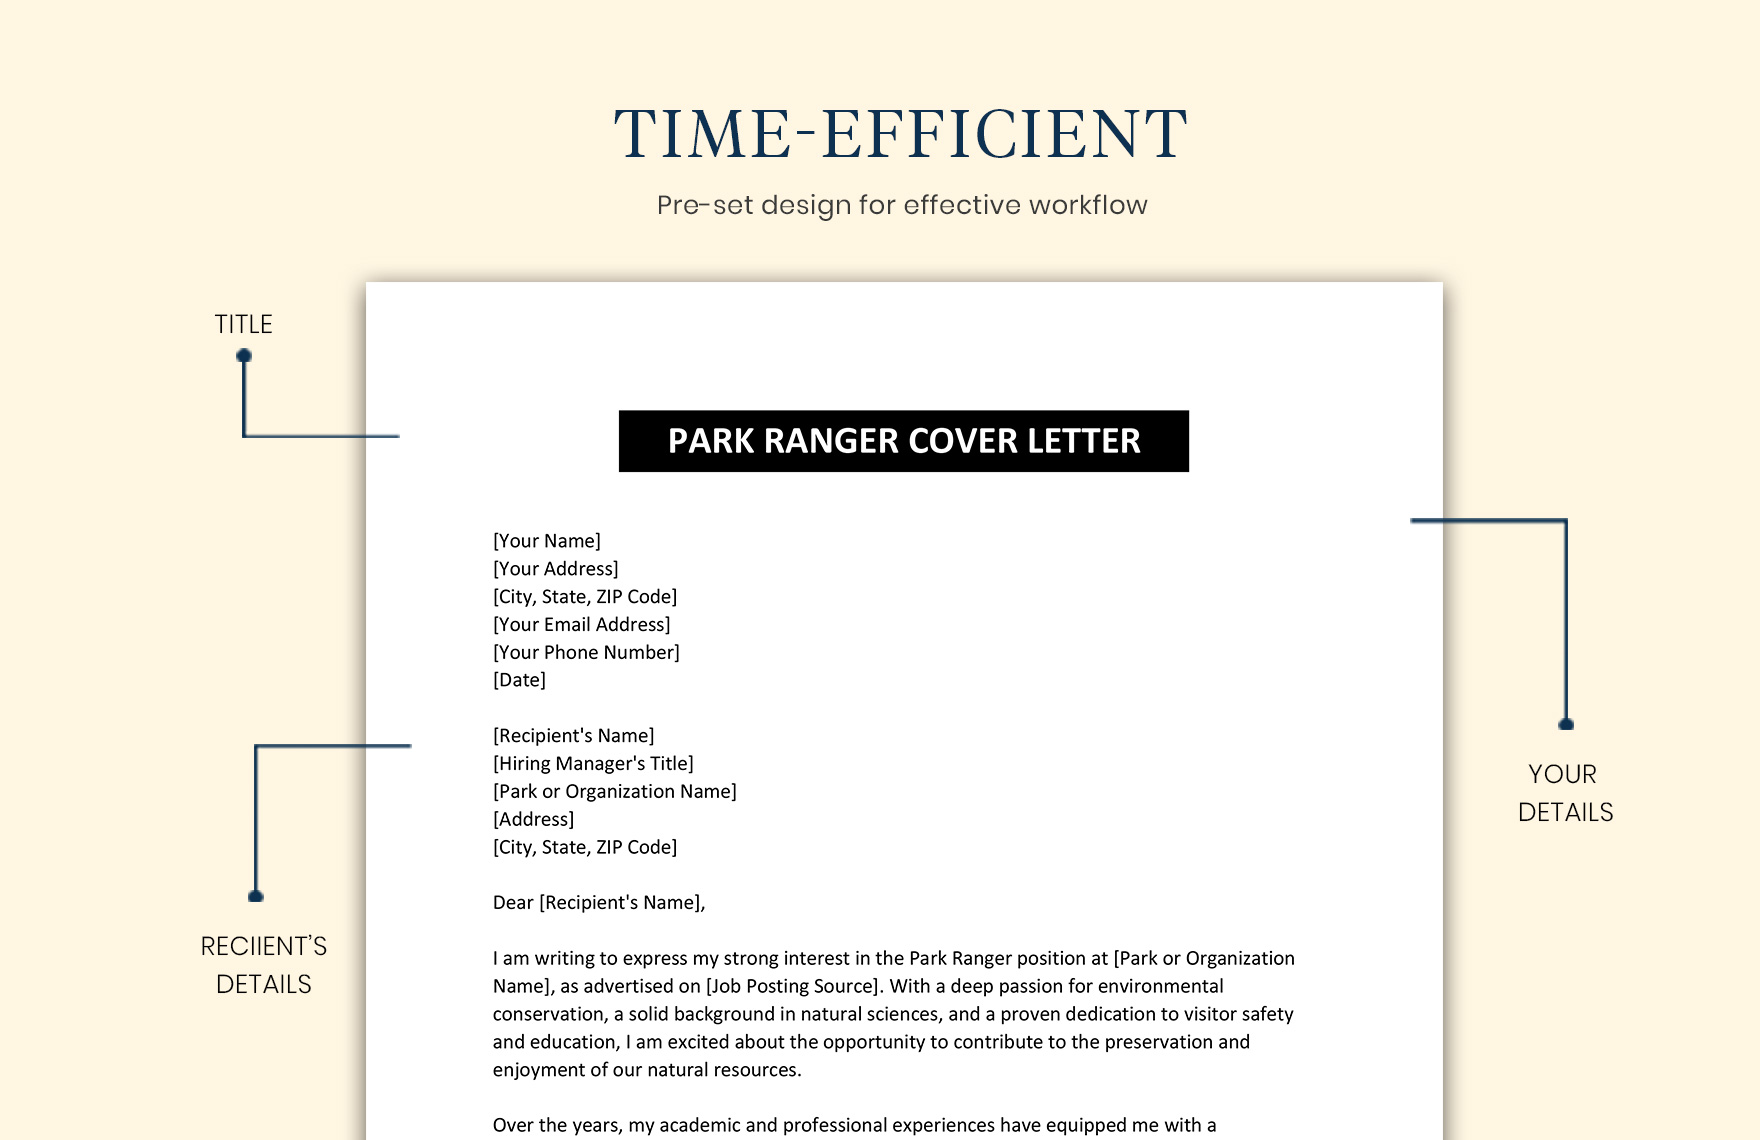 park ranger cover letter reddit